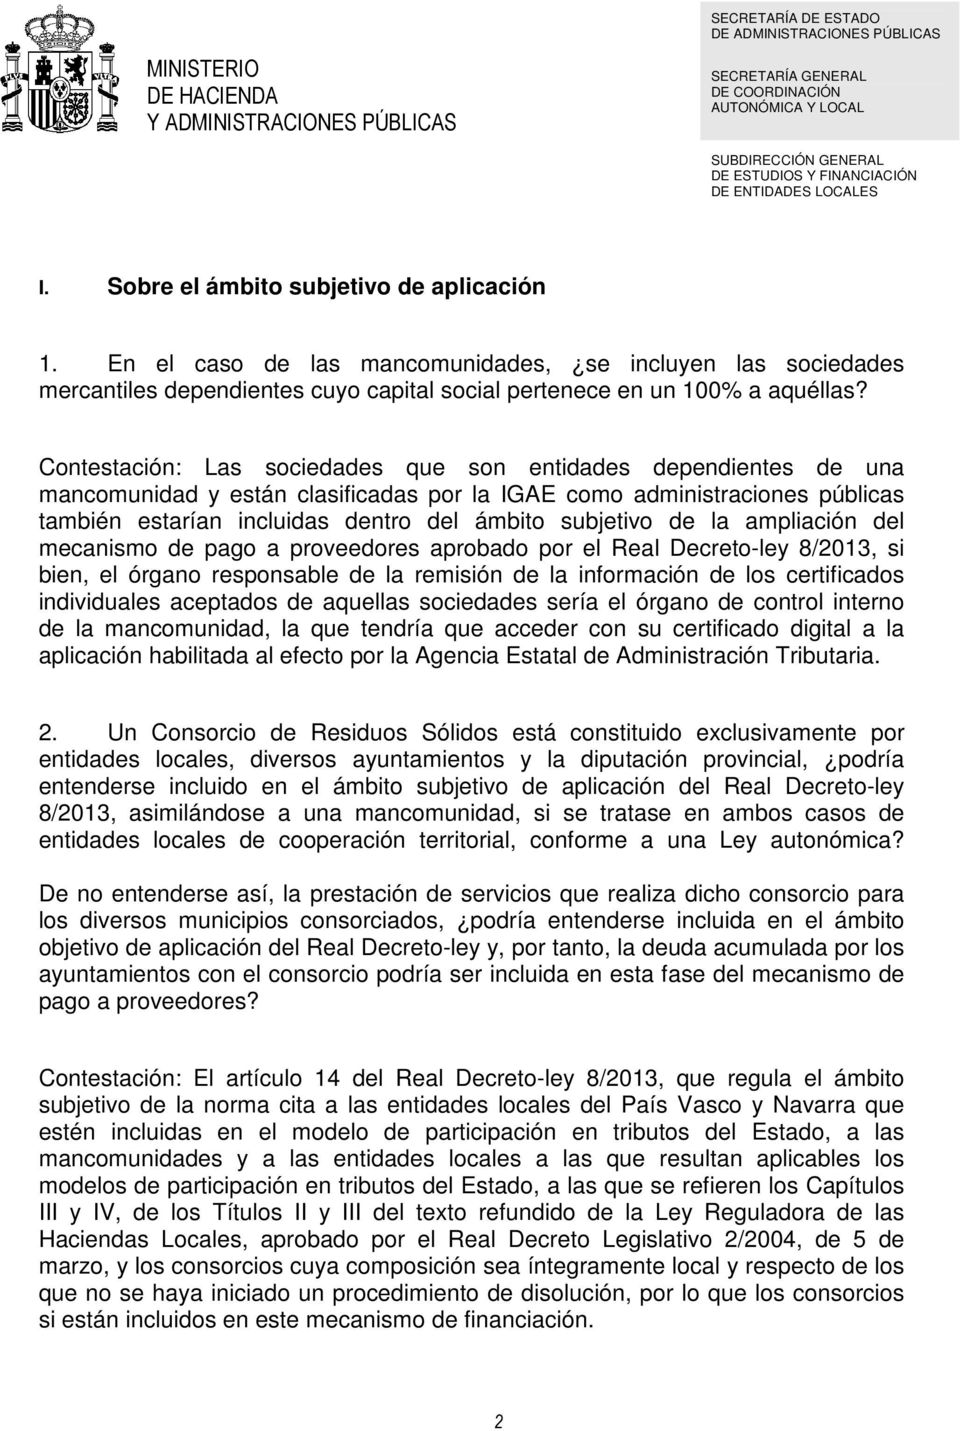 de la ampliación del mecanismo de pago a proveedores aprobado por el Real Decreto-ley 8/2013, si bien, el órgano responsable de la remisión de la información de los certificados individuales